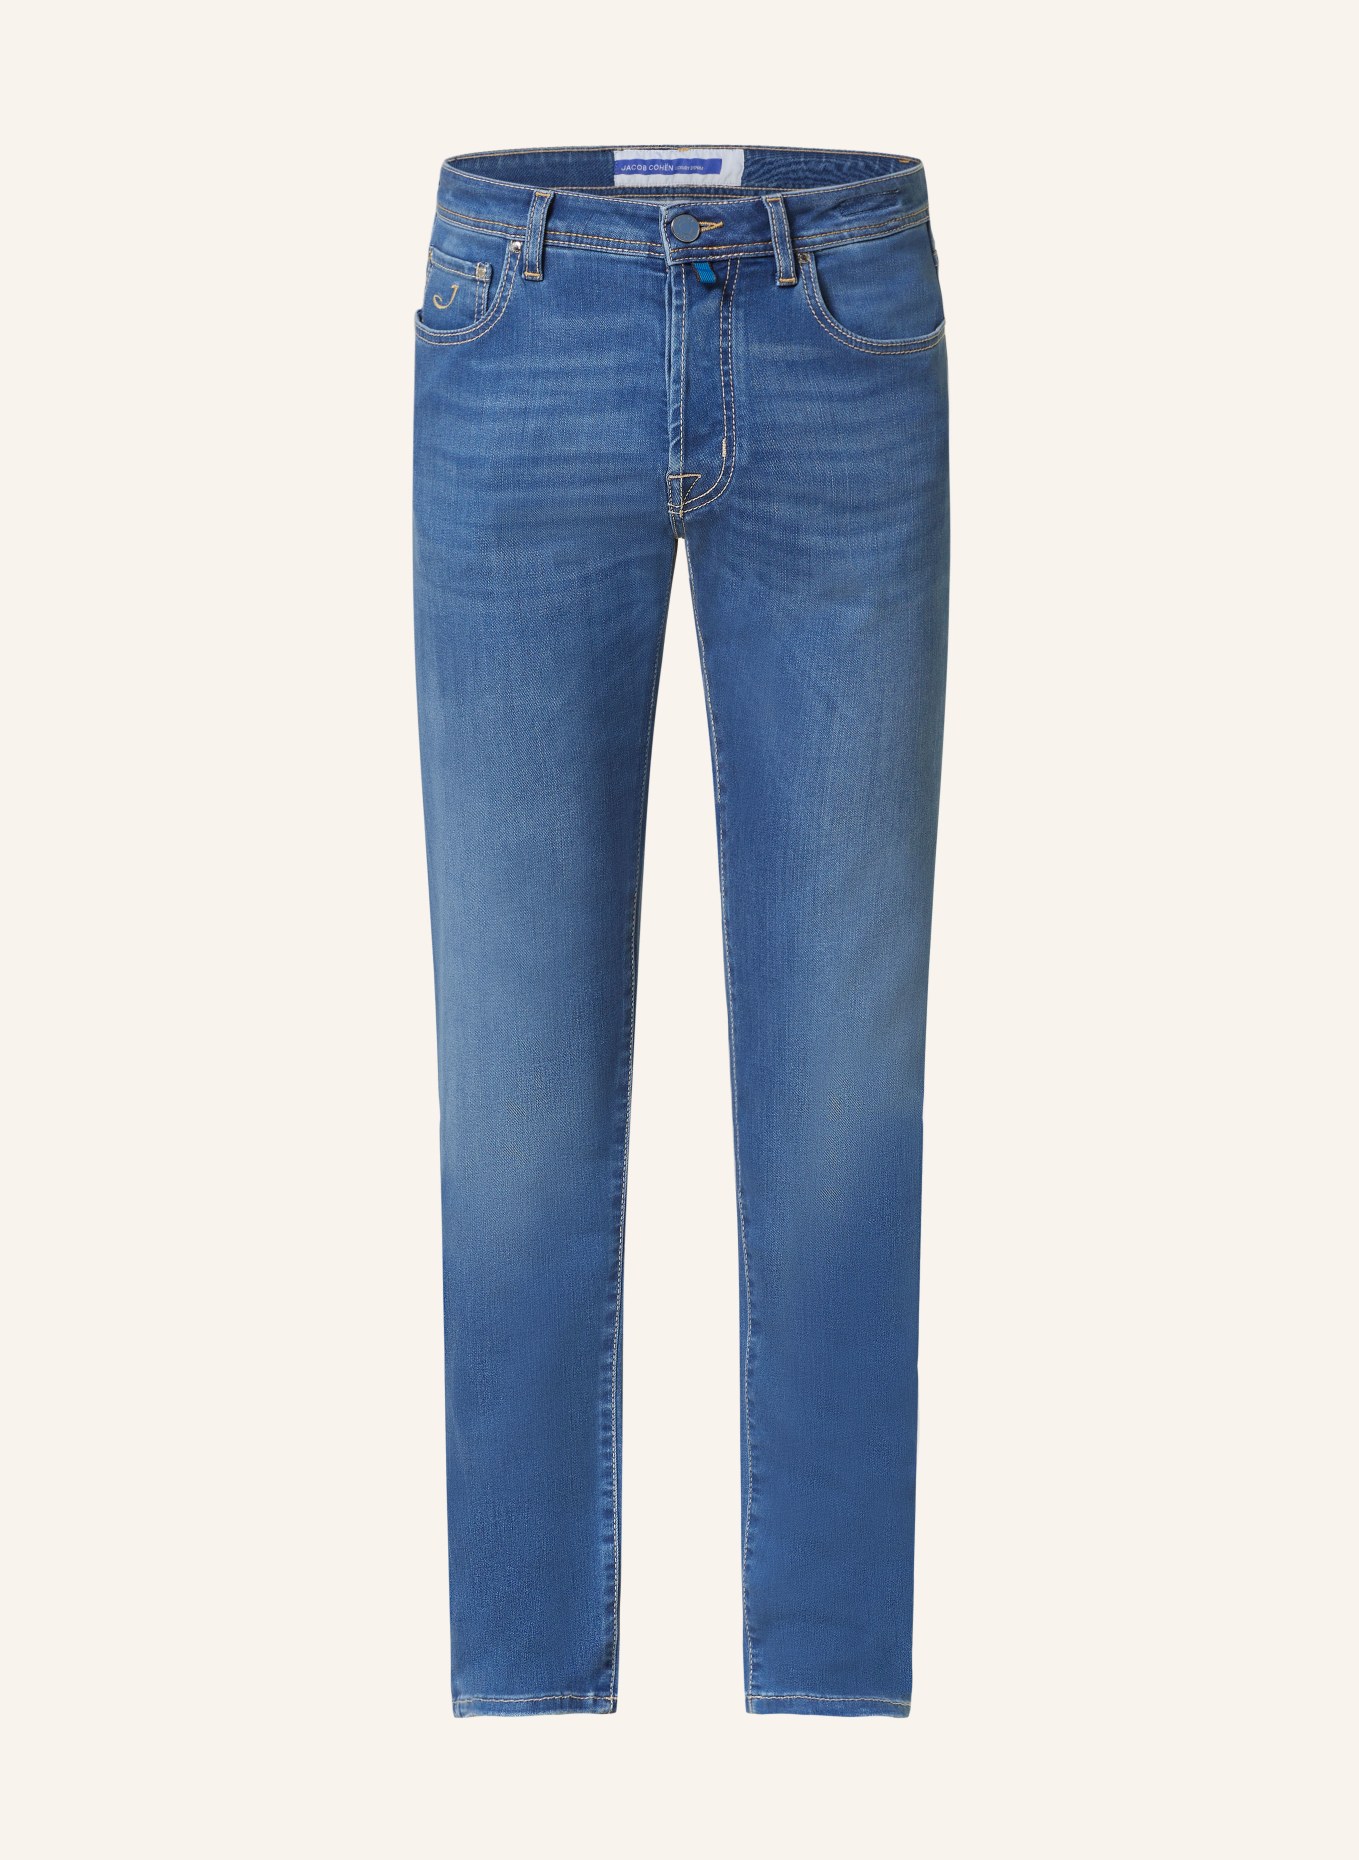 JACOB COHEN Jeans BARD slim fit, Color: 753D Light Blue (Image 1)